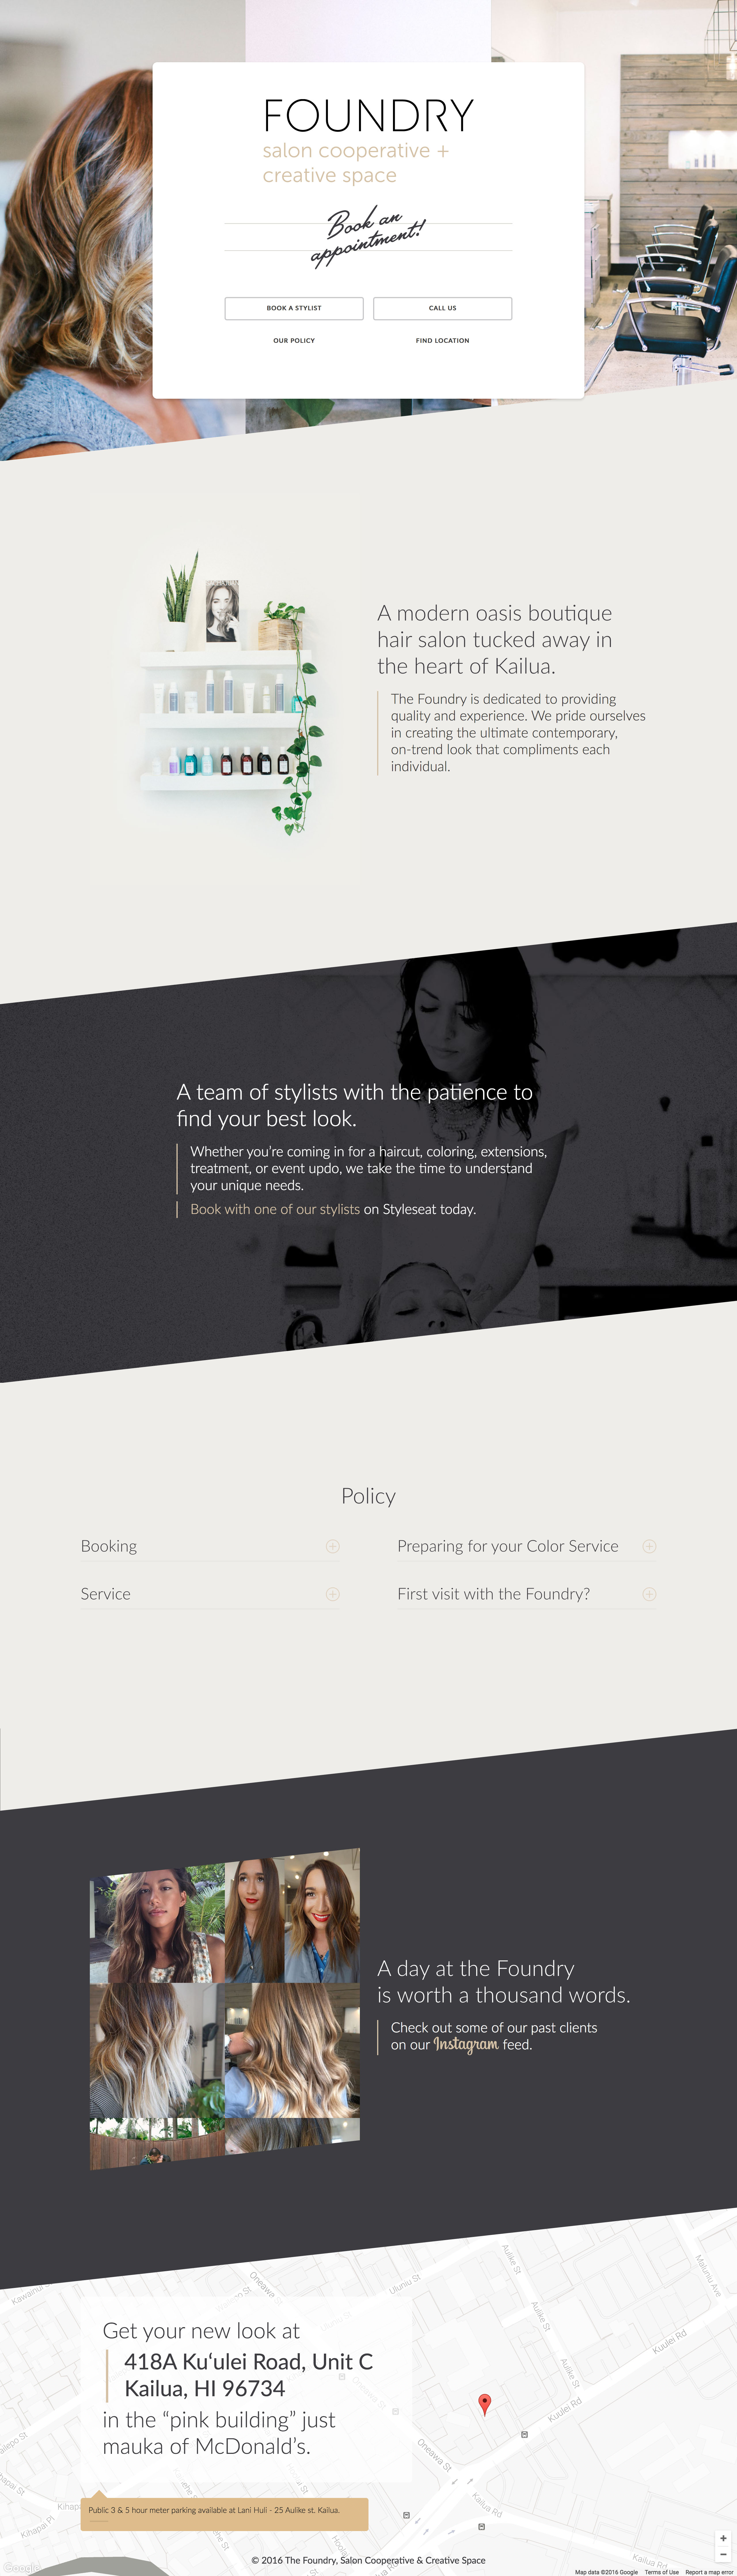 Foundry Salon Website Screenshot